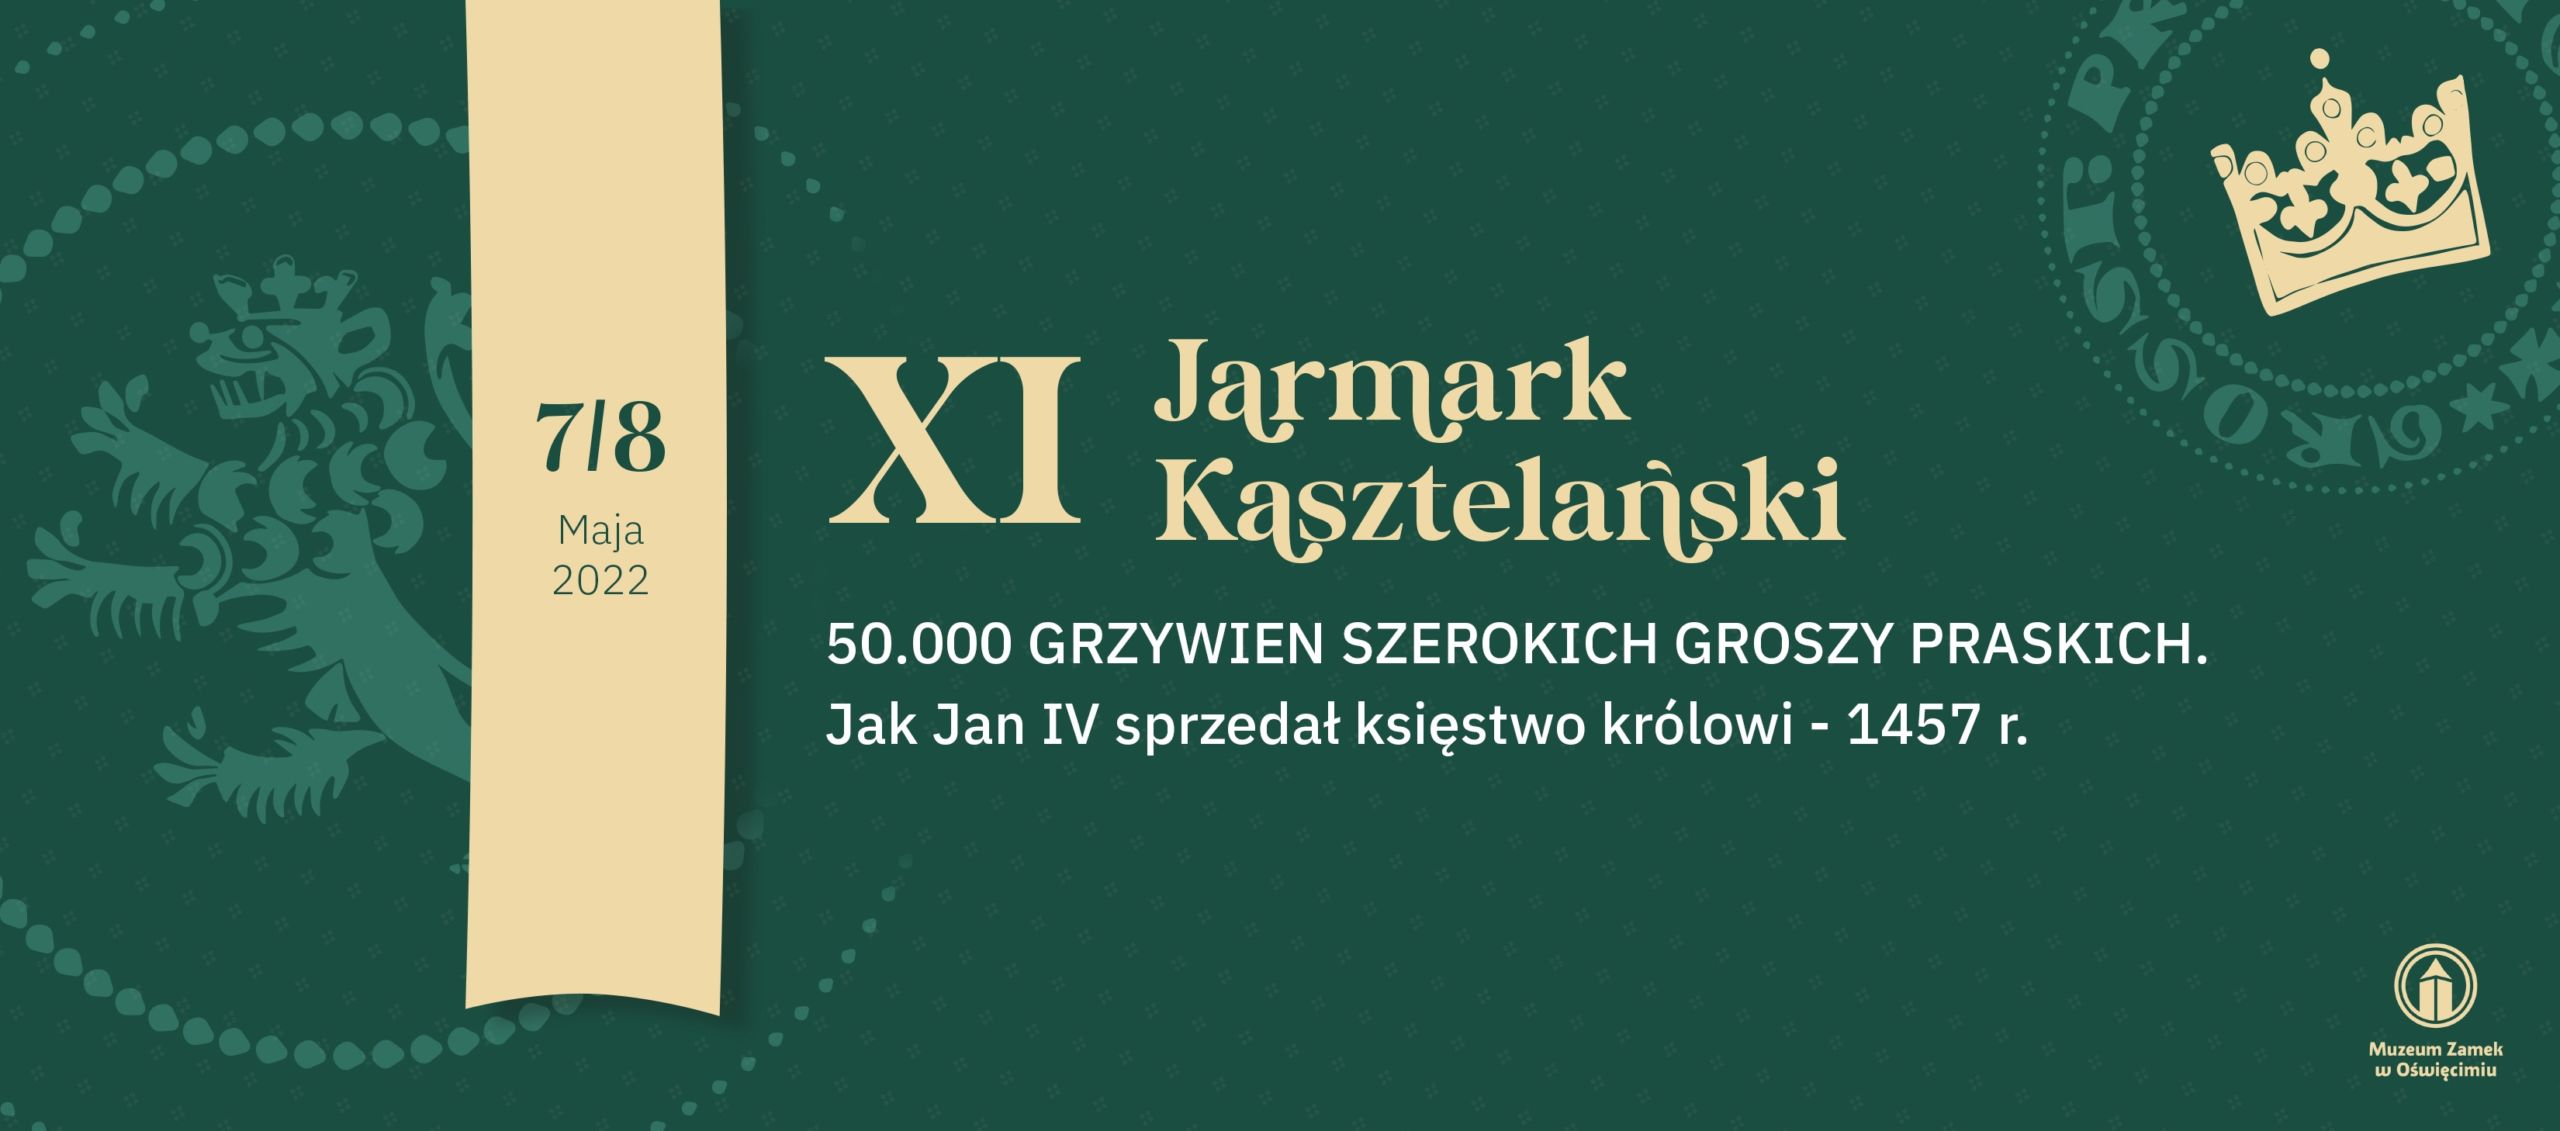 Muzeum Zamek w Oświęcimiu XI Jarmark Kasztelański Warto Zobaczyć Oświęcim info oświęcim